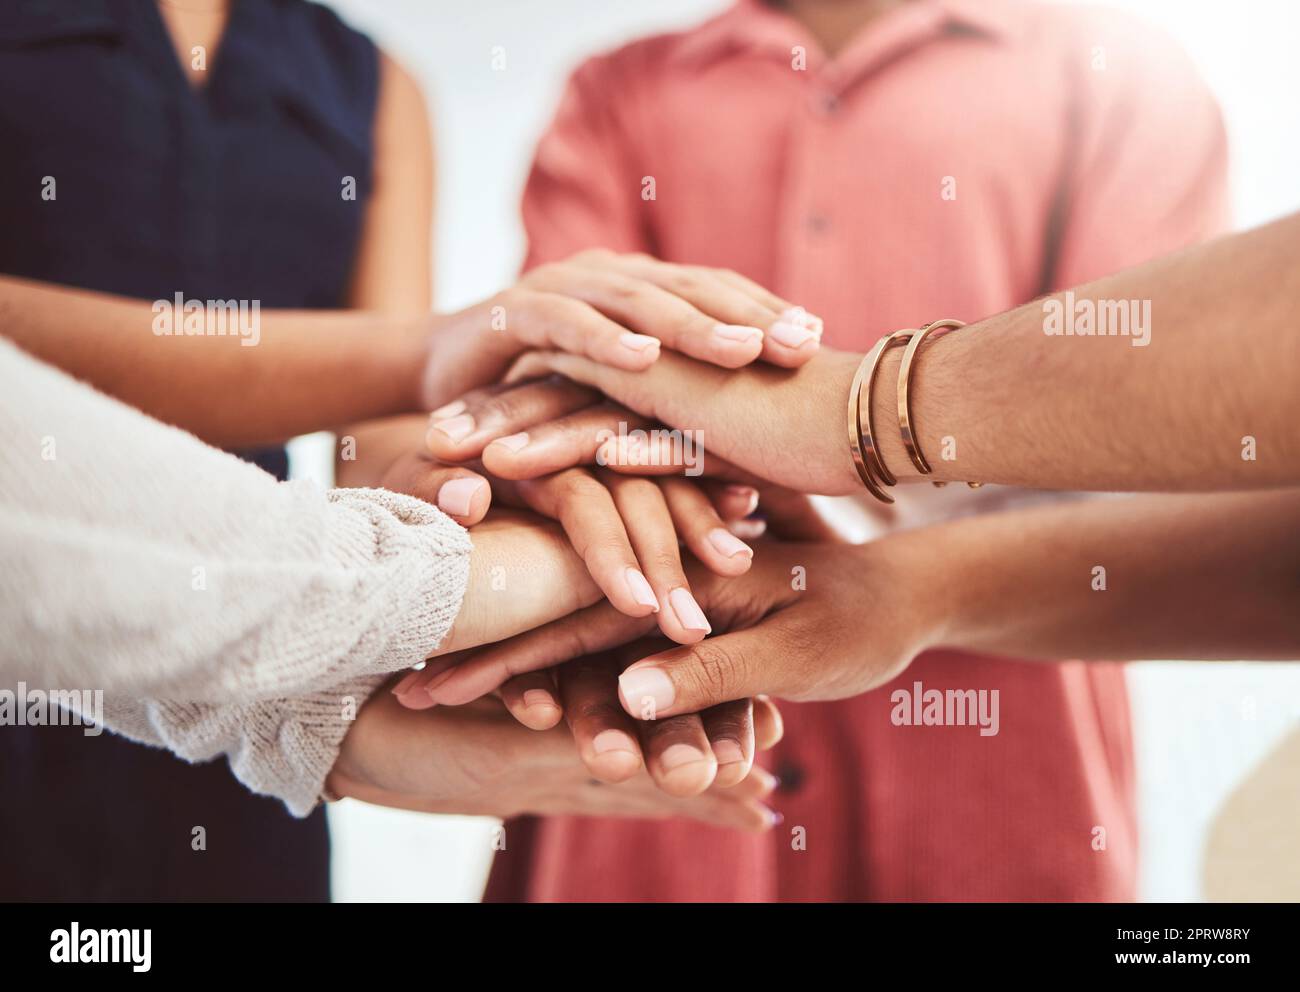 Hände, Unterstützung und Motivation der Vielfalt von Freunden, die helfende Hand und Gemeinschaft zeigen. Menschen in einem Gruppenkreis mit Vertrauen, Freundschaft, Liebe und der Hoffnung, gemeinsam Solidarität für gute Teamarbeit zu zeigen Stockfoto